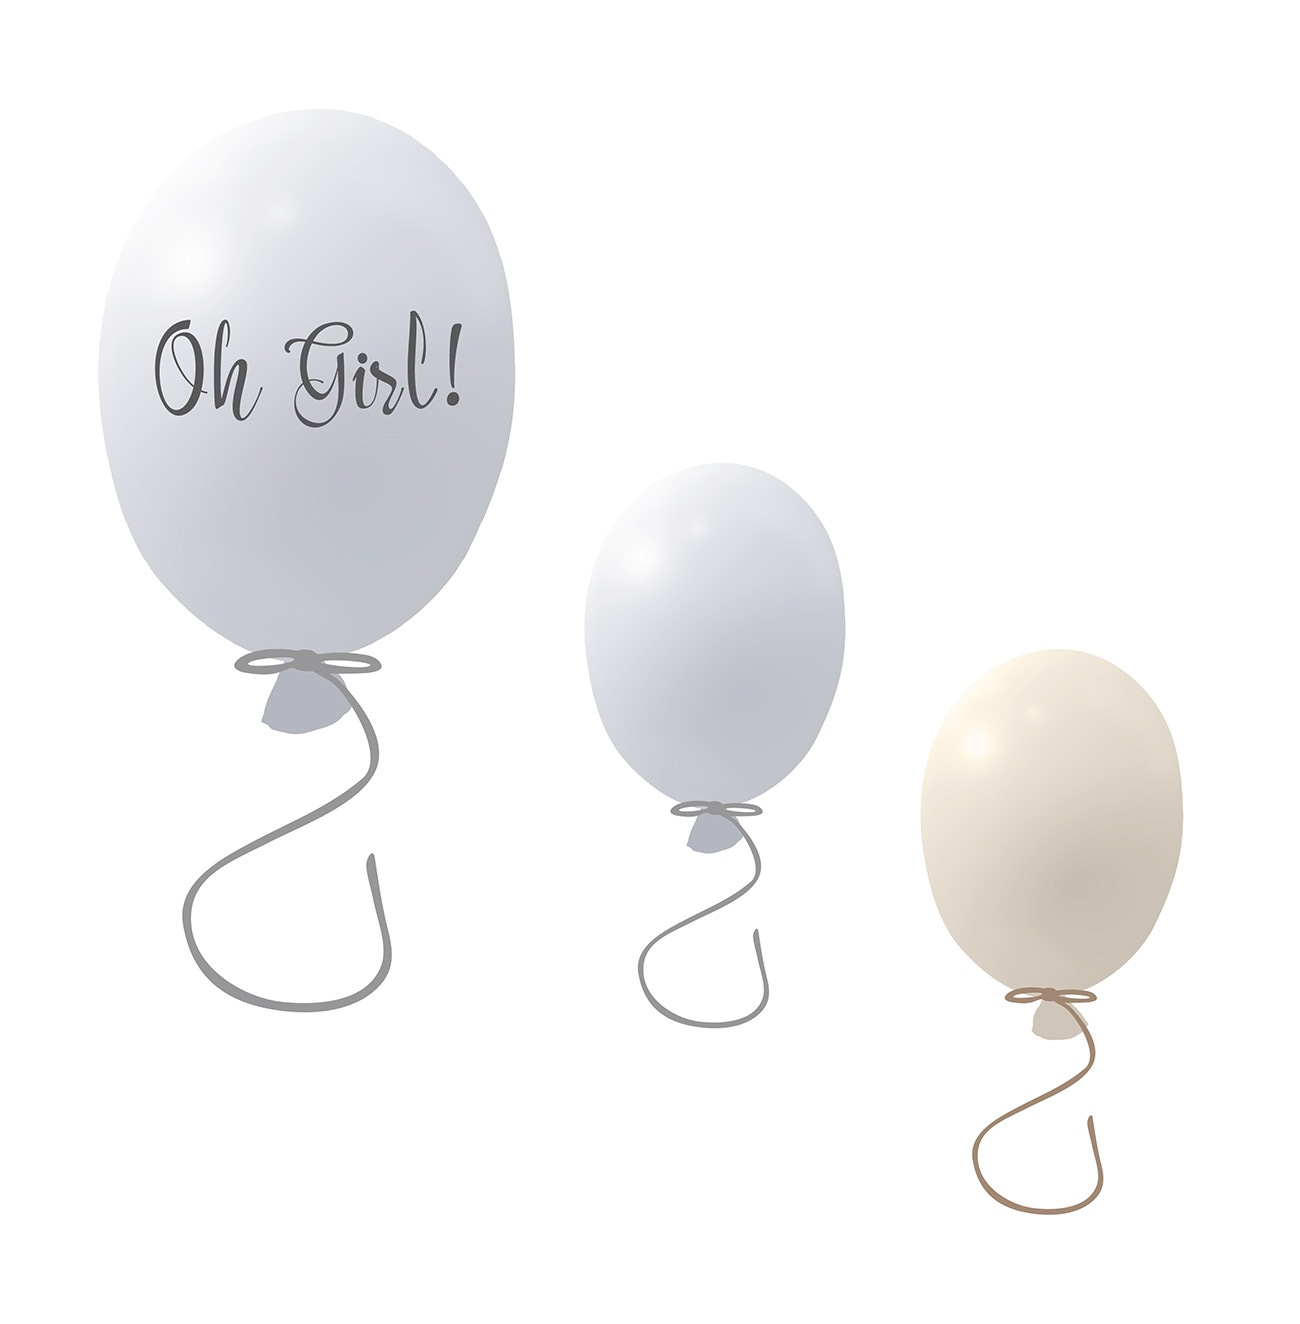 Väggklistermärke partyballonger 3-pack, grey Väggklistermärke bestående av en stor grå ballong med texten Oh girl och två mindre ballonger